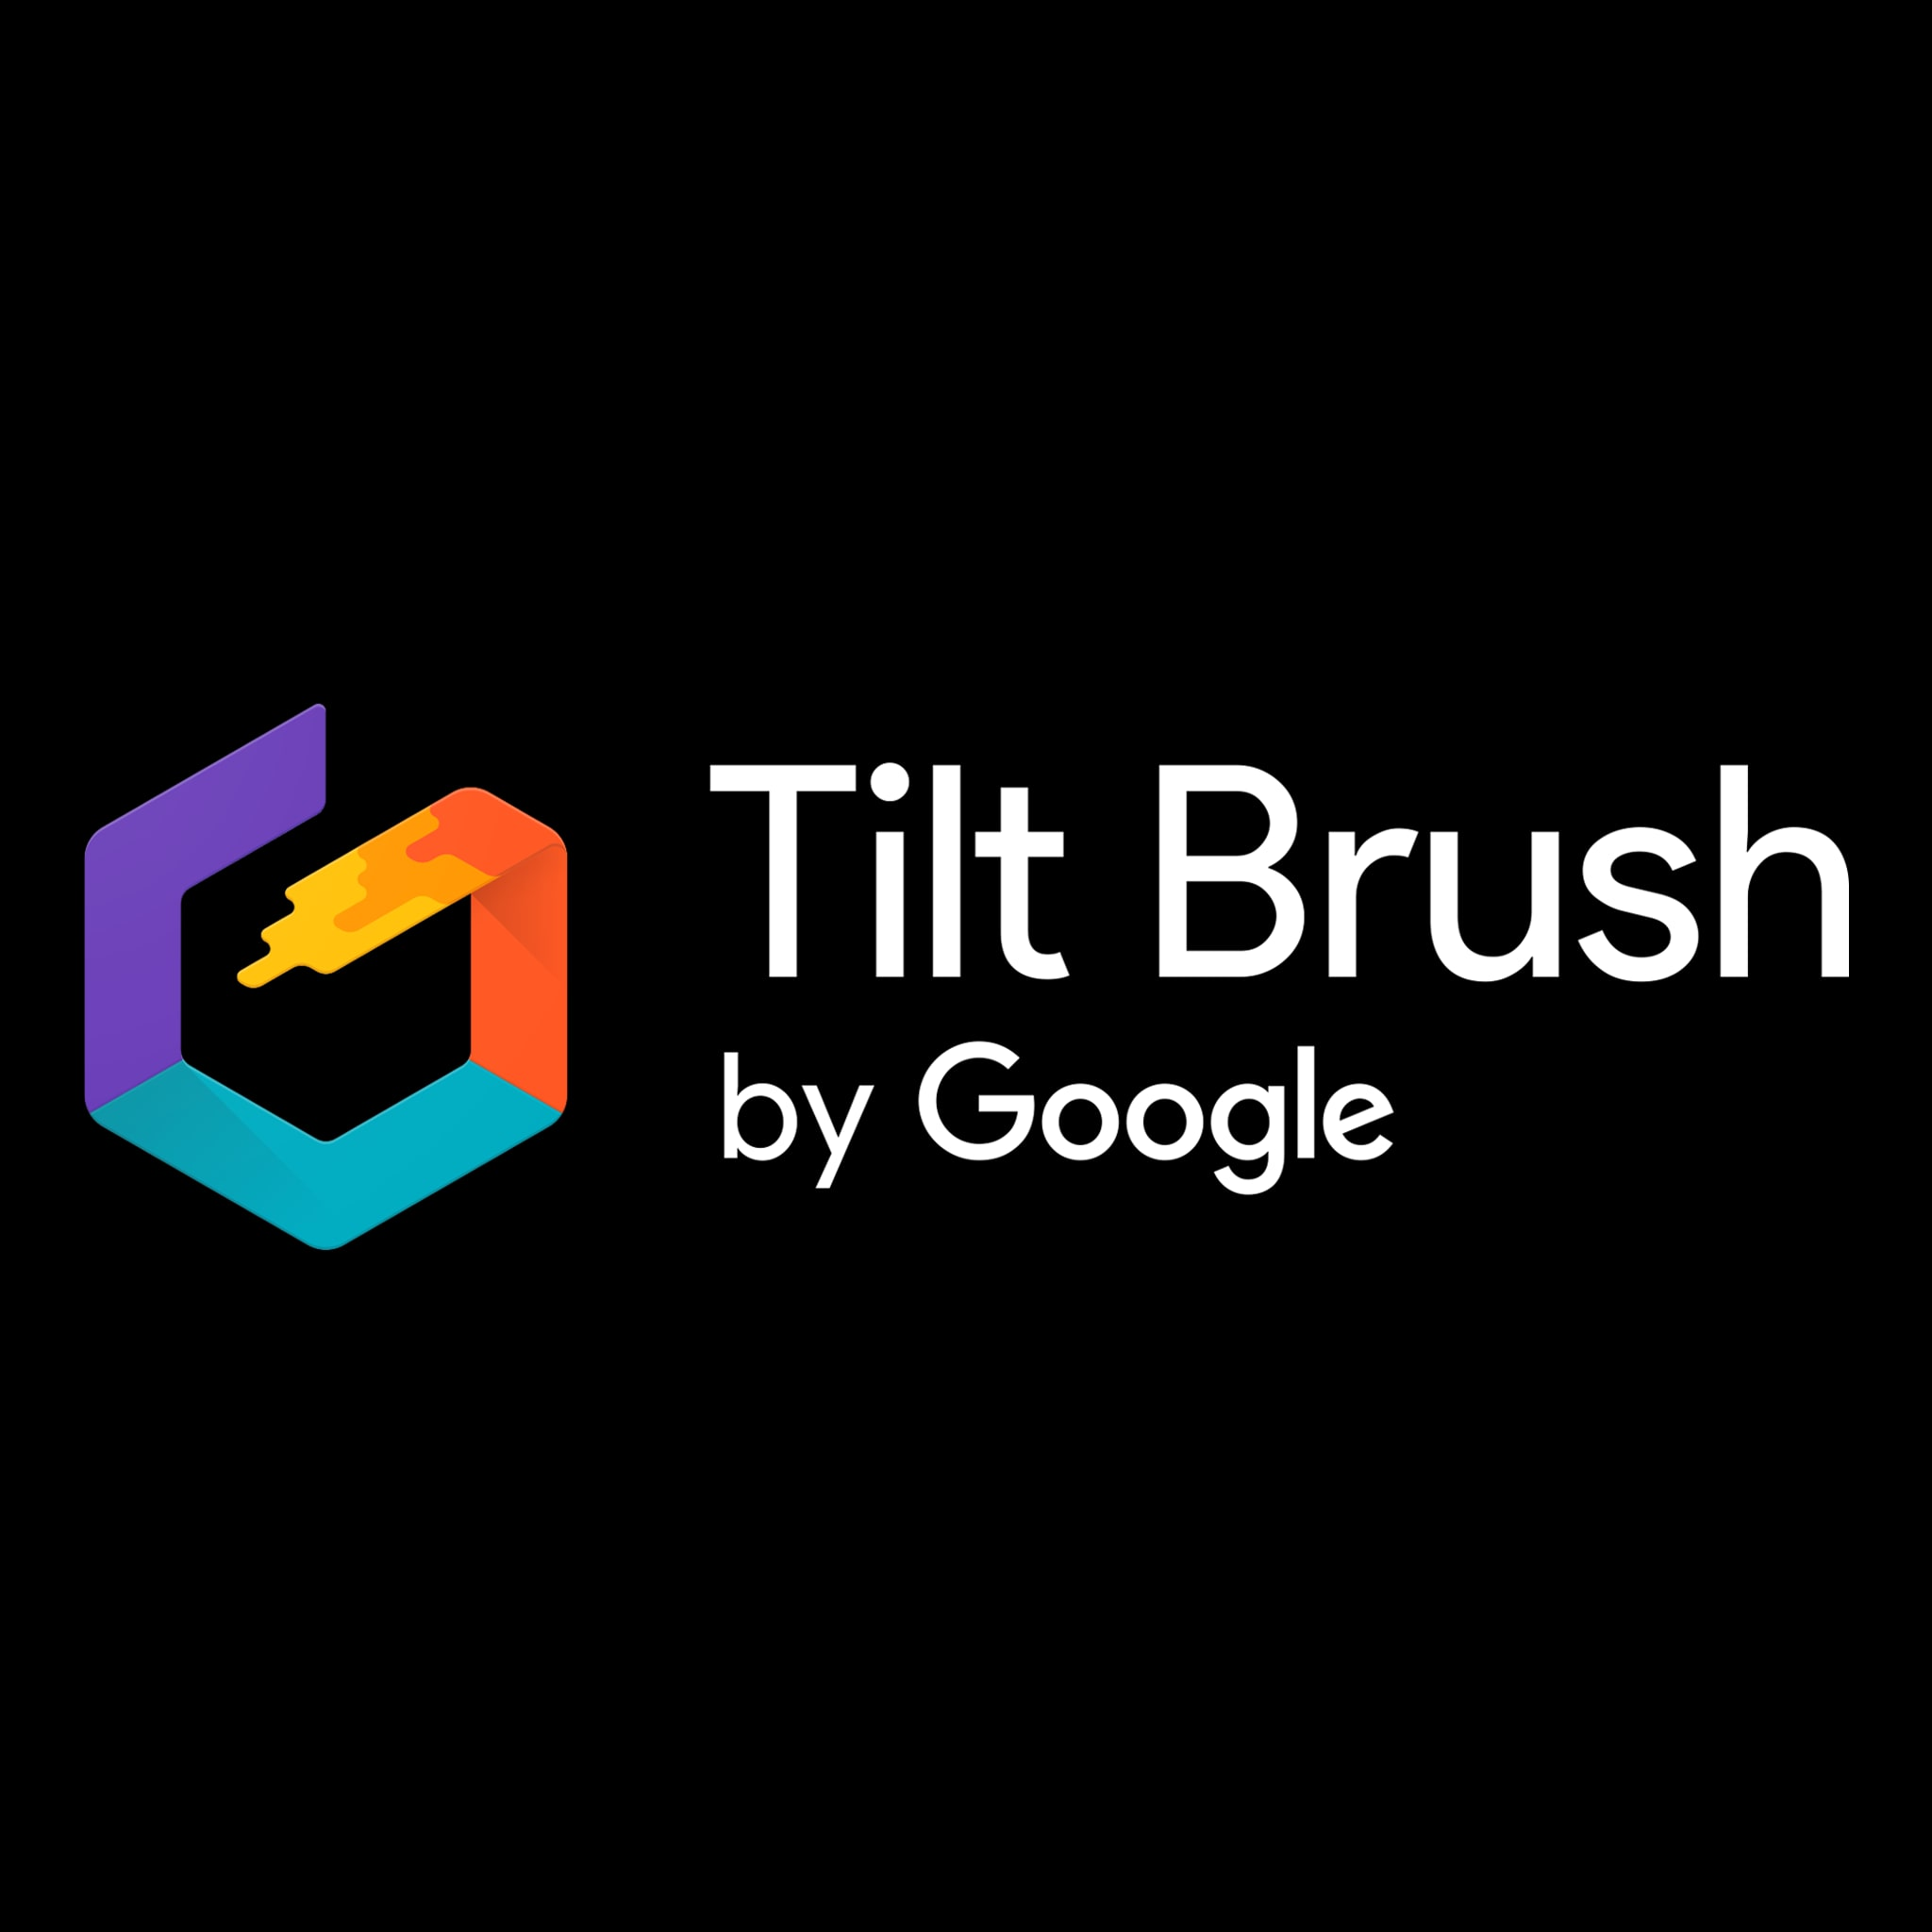 Google playstation. Tilt Brush VR. Tilt Brush примеры работ. Tilt Brush VR описание. Tilt Brush Paintings.